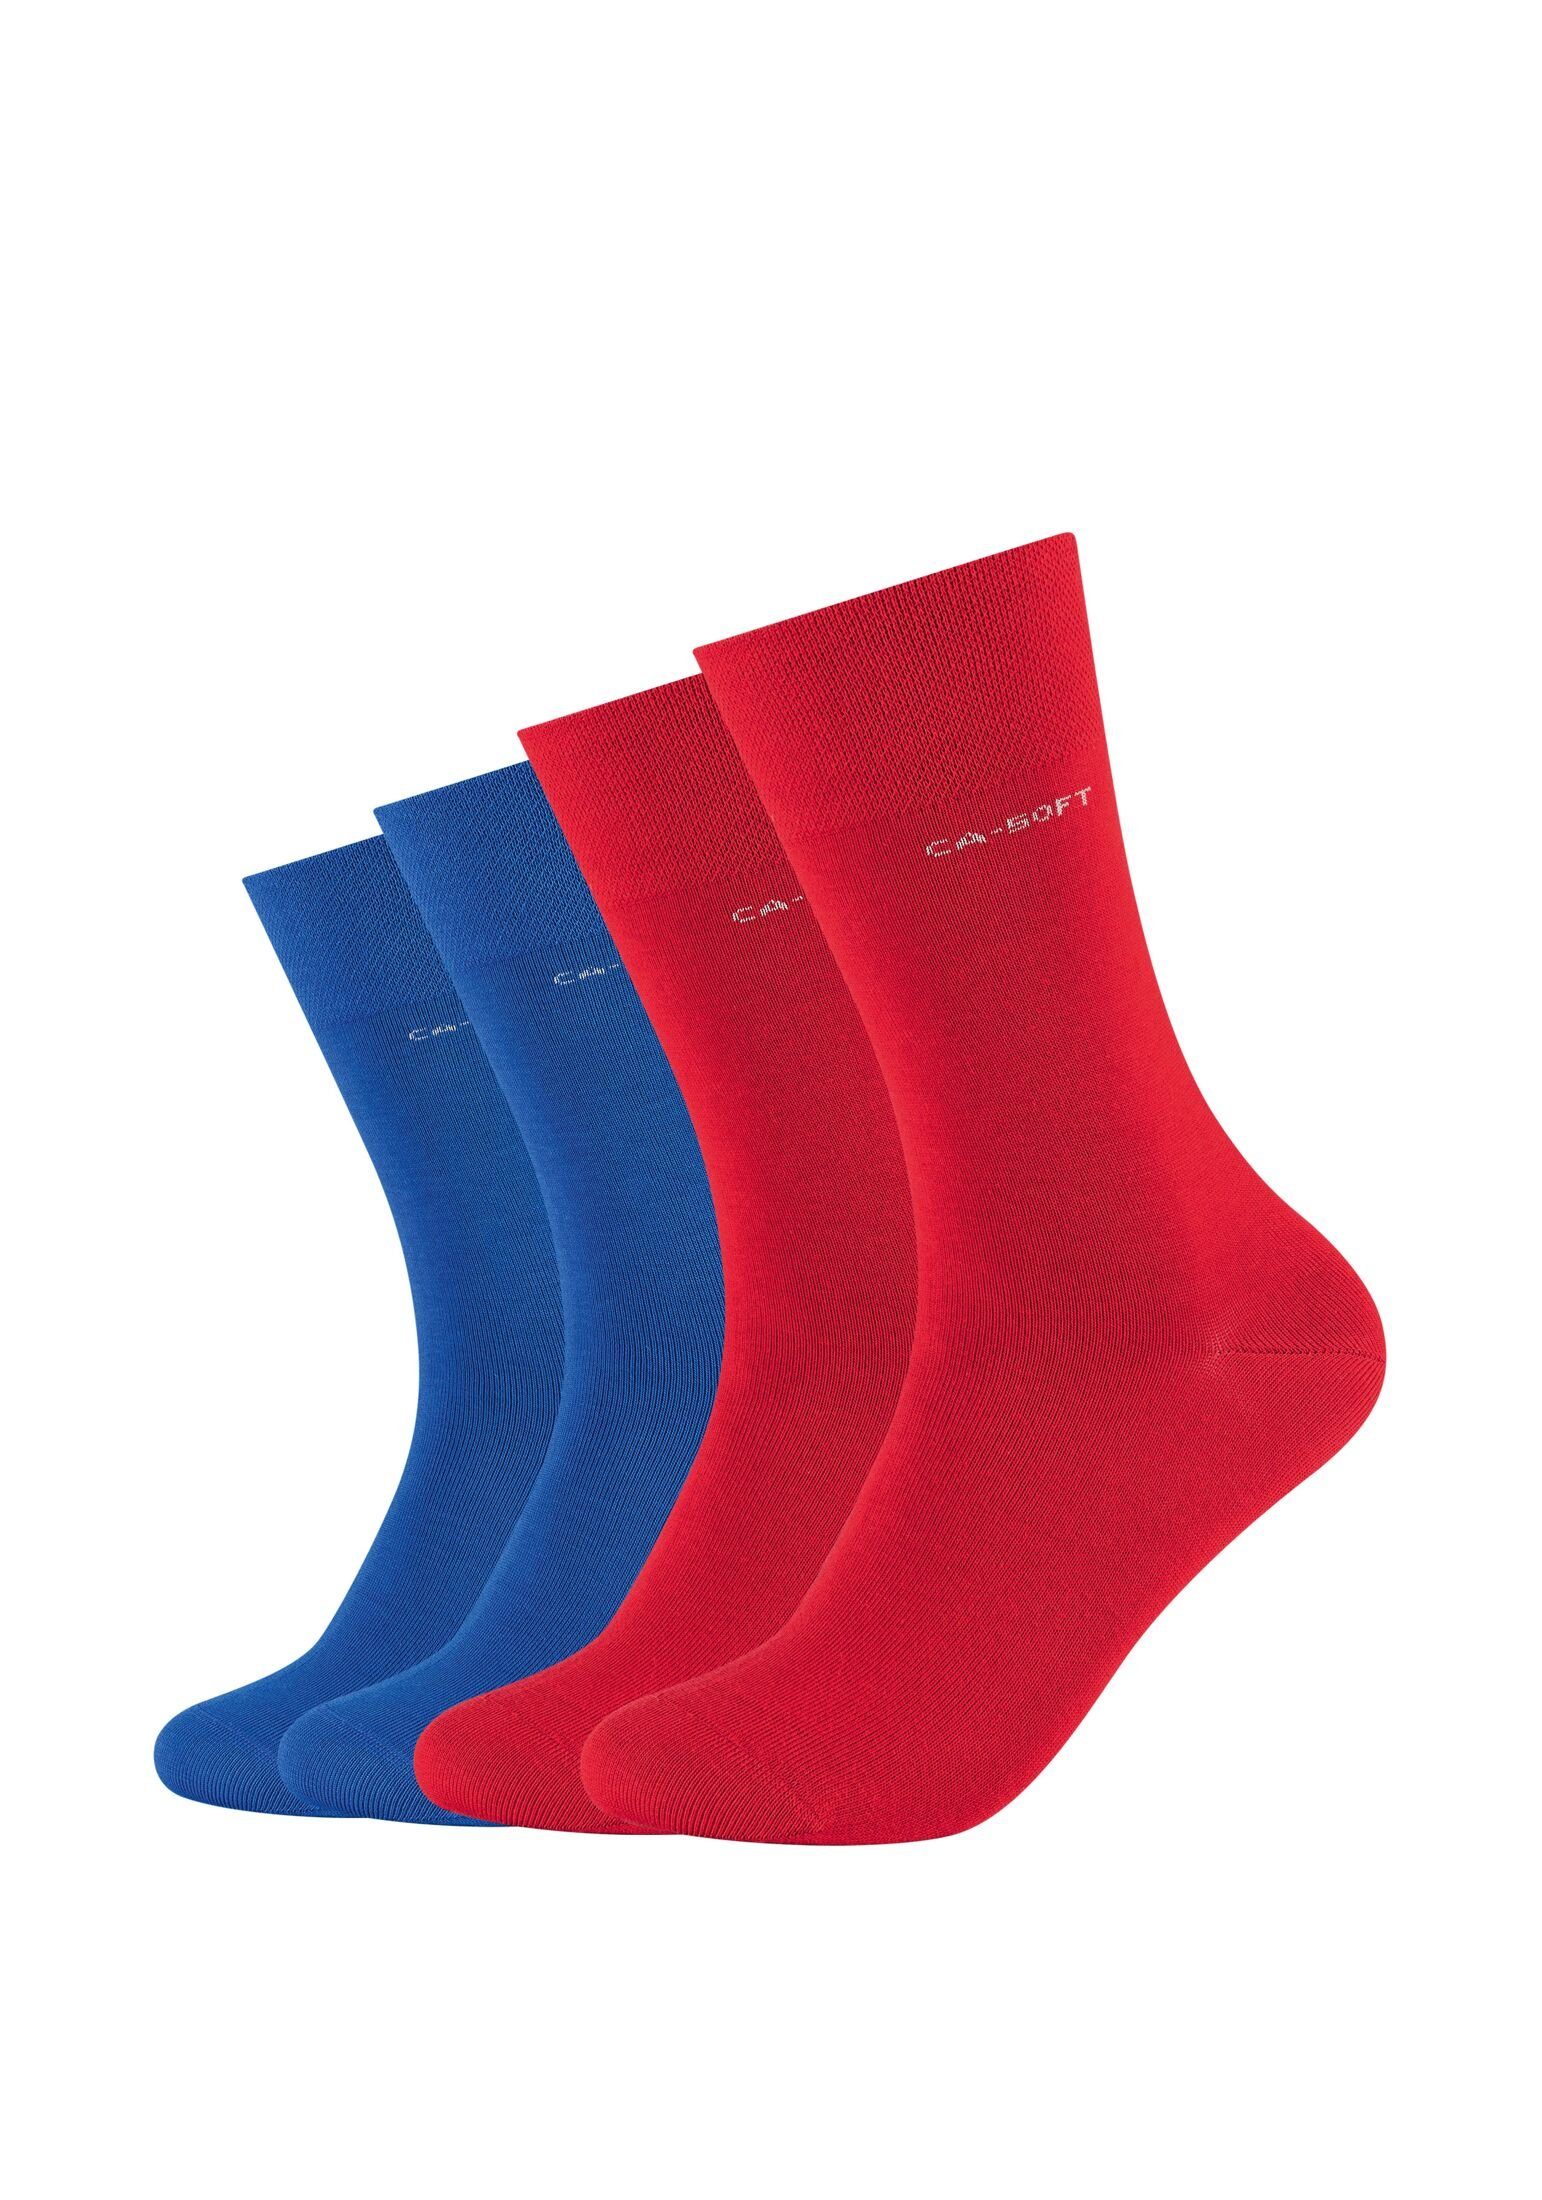 Camano Socken Socken für Damen und Herren Businesssocken Komfortbund Bequem true red